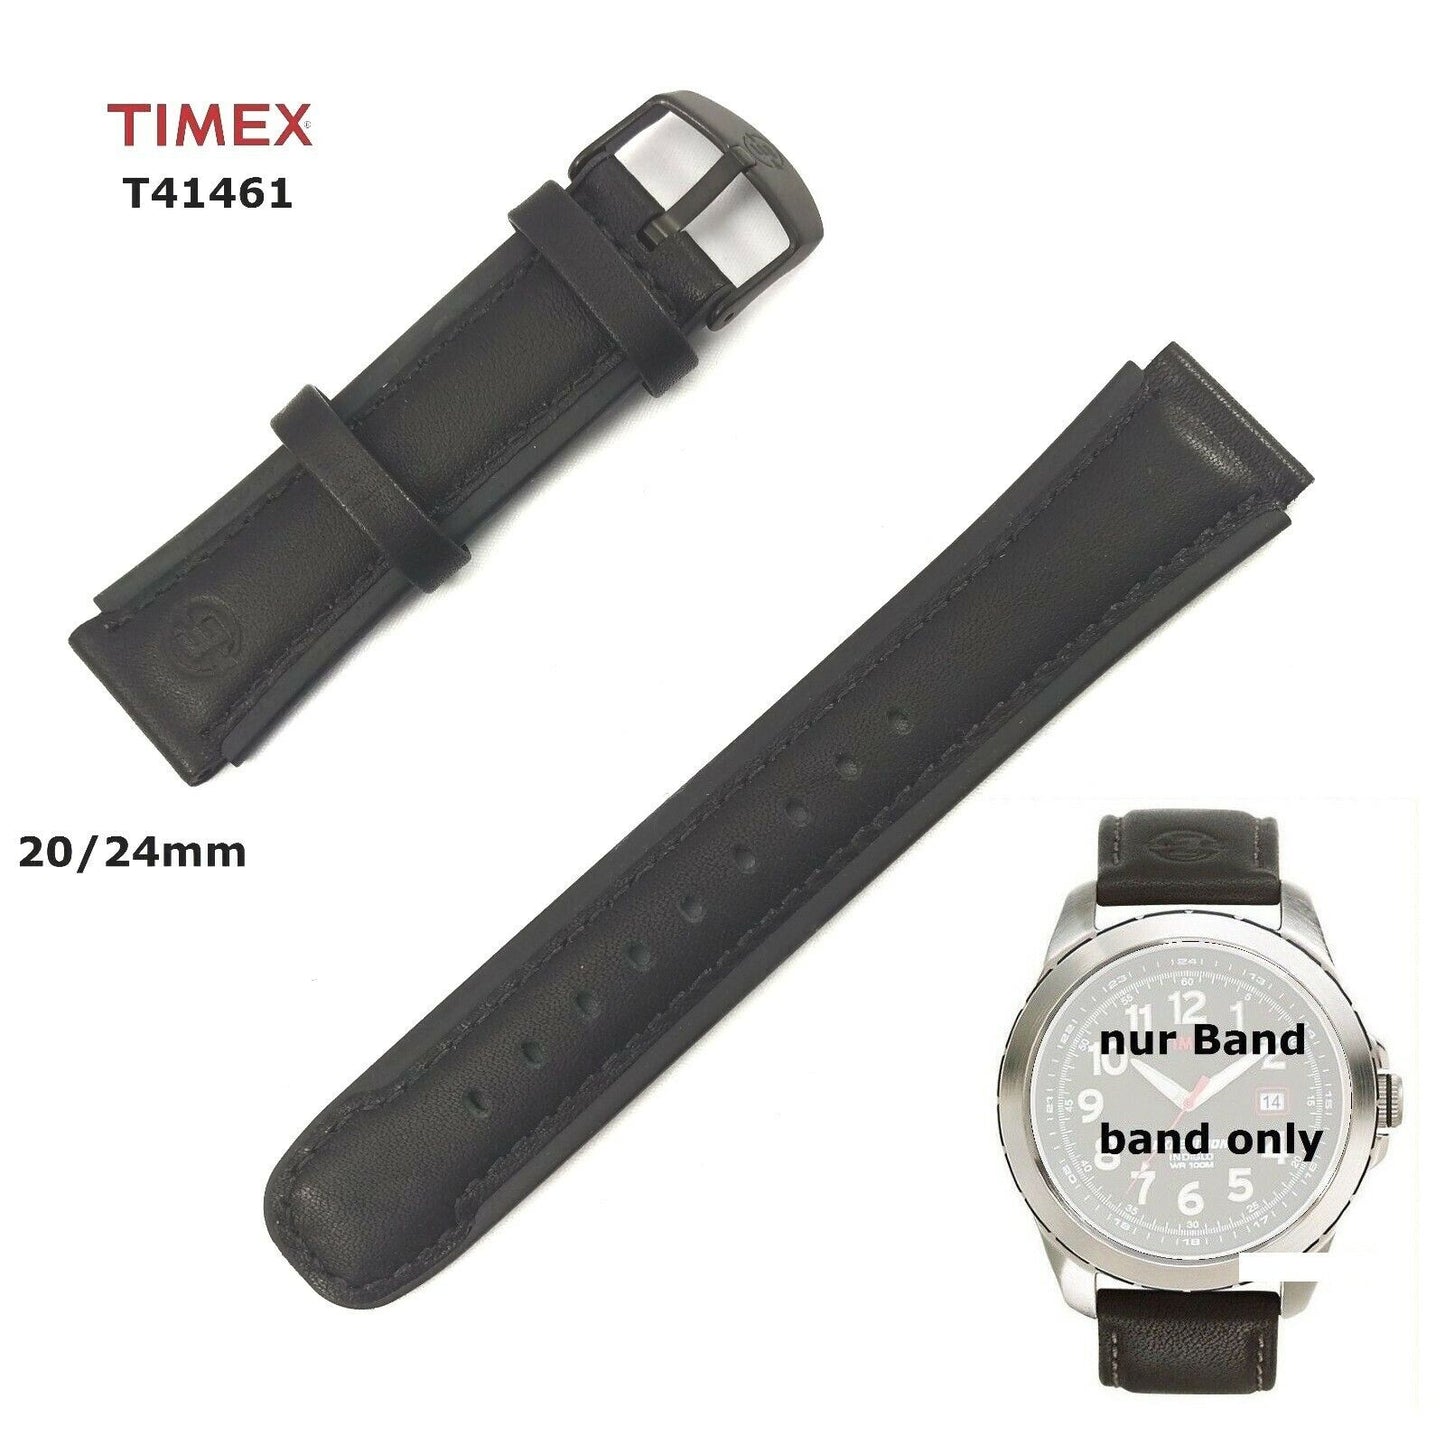 TIMEX Ersatzarmband T41461 EXPEDITION Metal Field - 20/24mm - wasserfest PU